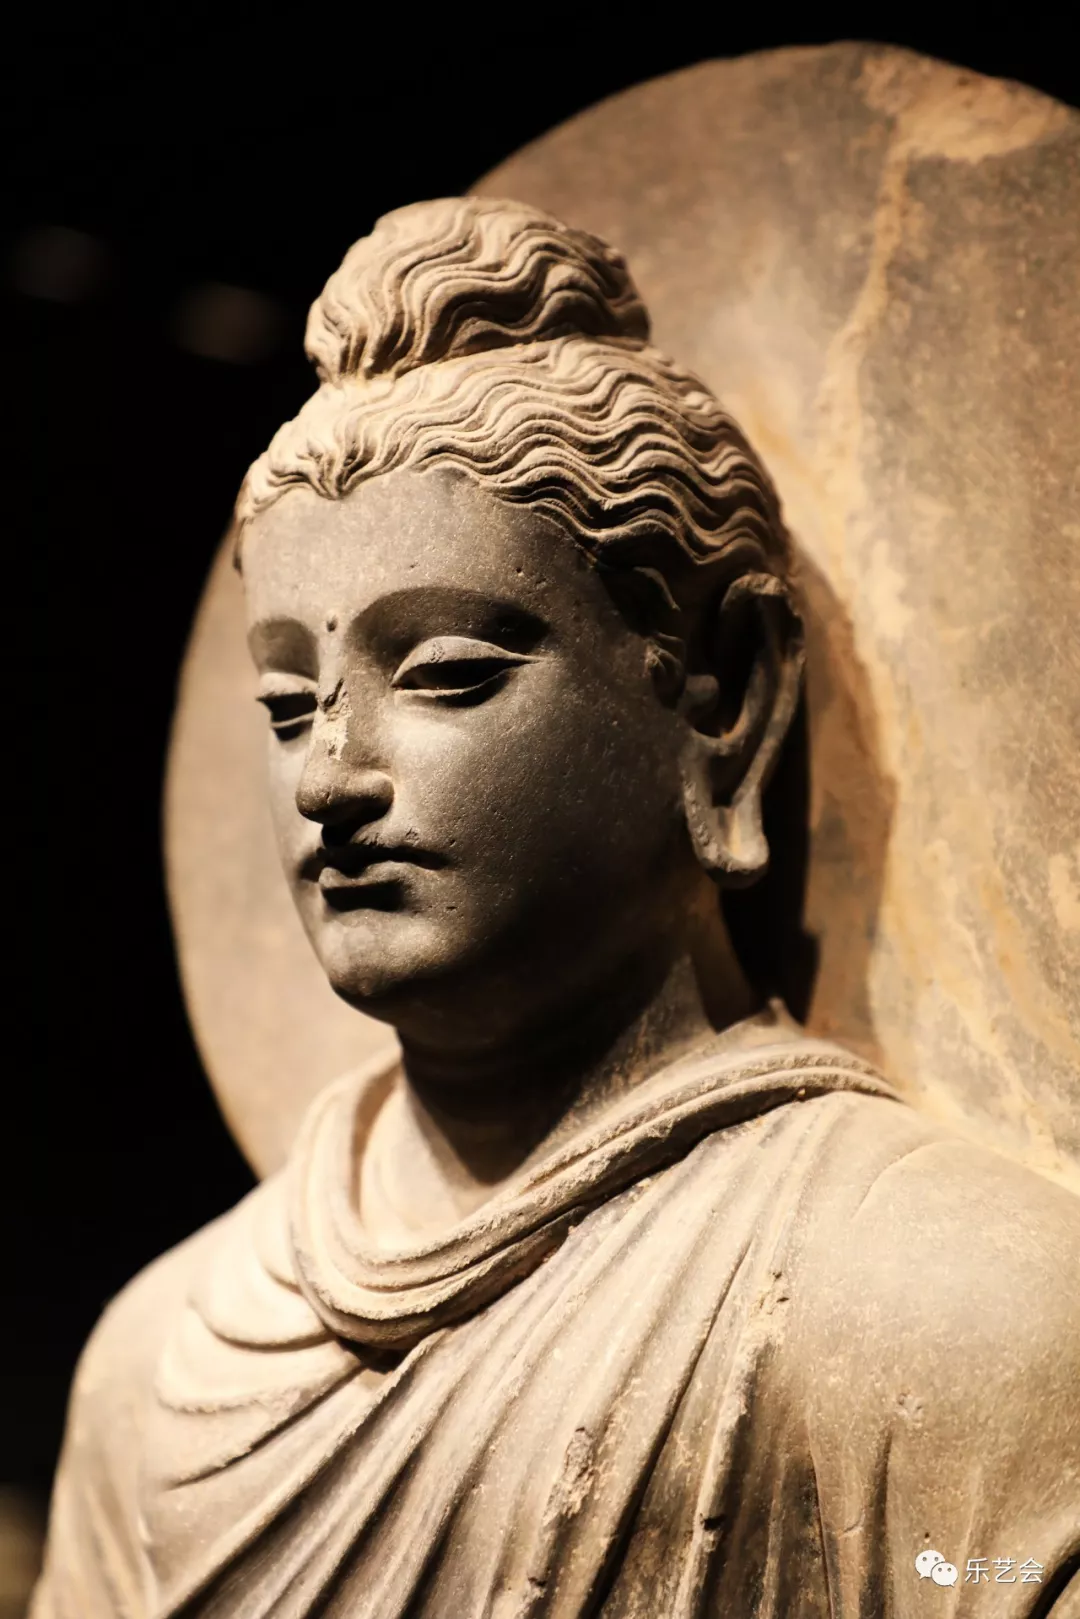 古代印度,佛教,印度教,耆那教等创出种类繁多的神像并通过雕刻形式